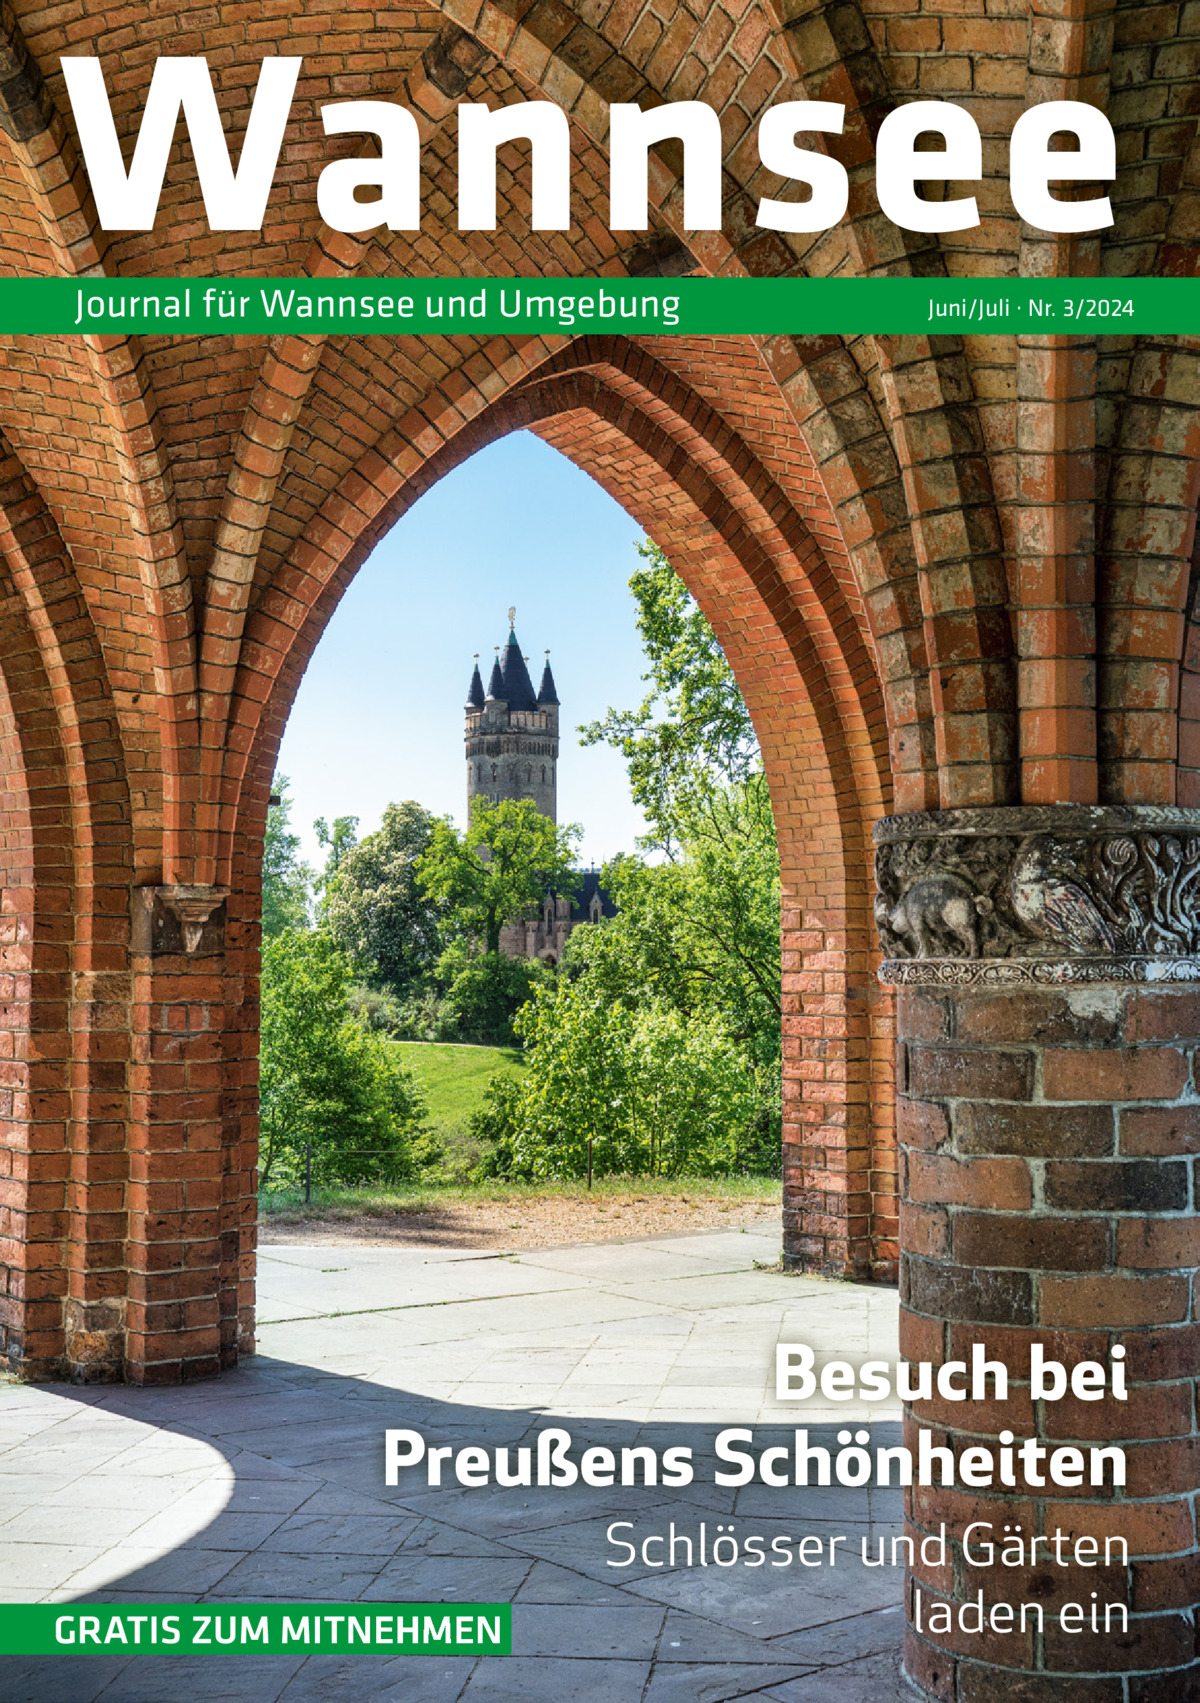 Wannsee Journal für Wannsee und Umgebung  Juni/Juli · Nr. 3/2024  Besuch bei Preußens Schönheiten GRATIS ZUM MITNEHMEN  Schlösser und Gärten laden ein